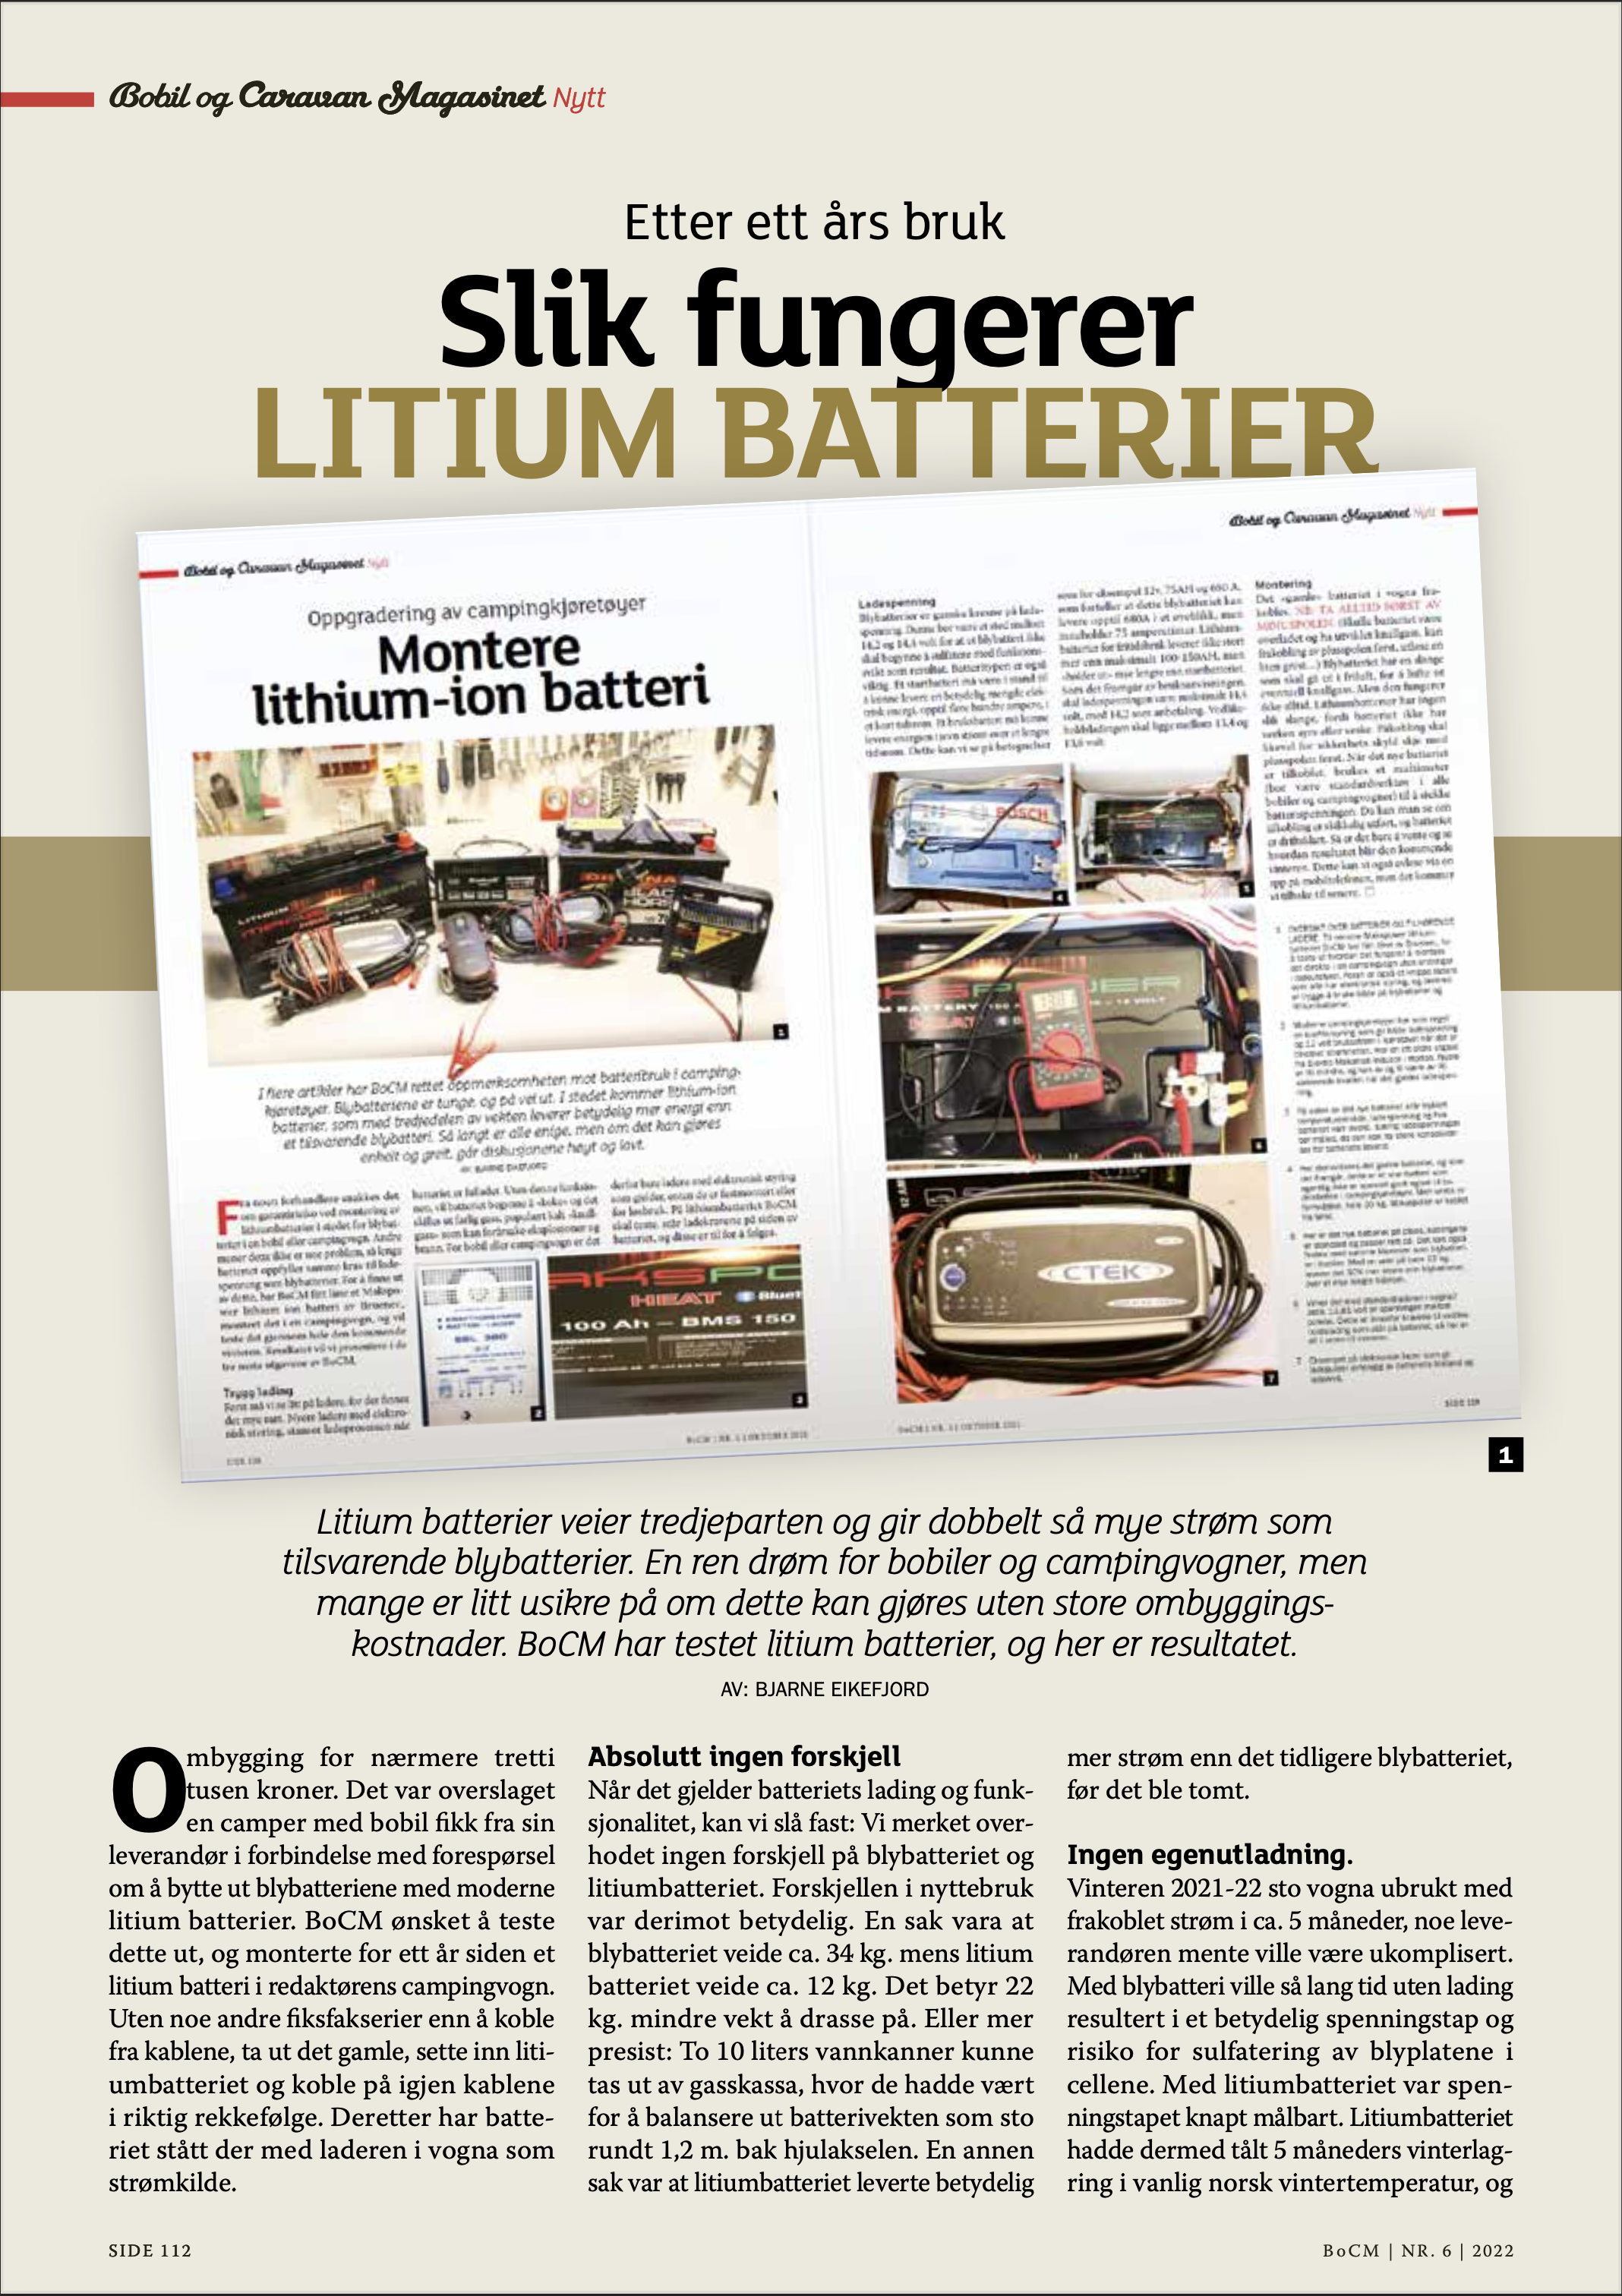 Artikkel-bobil-og-caravan-etter-ett-år-med-litium-bodelsbatteri